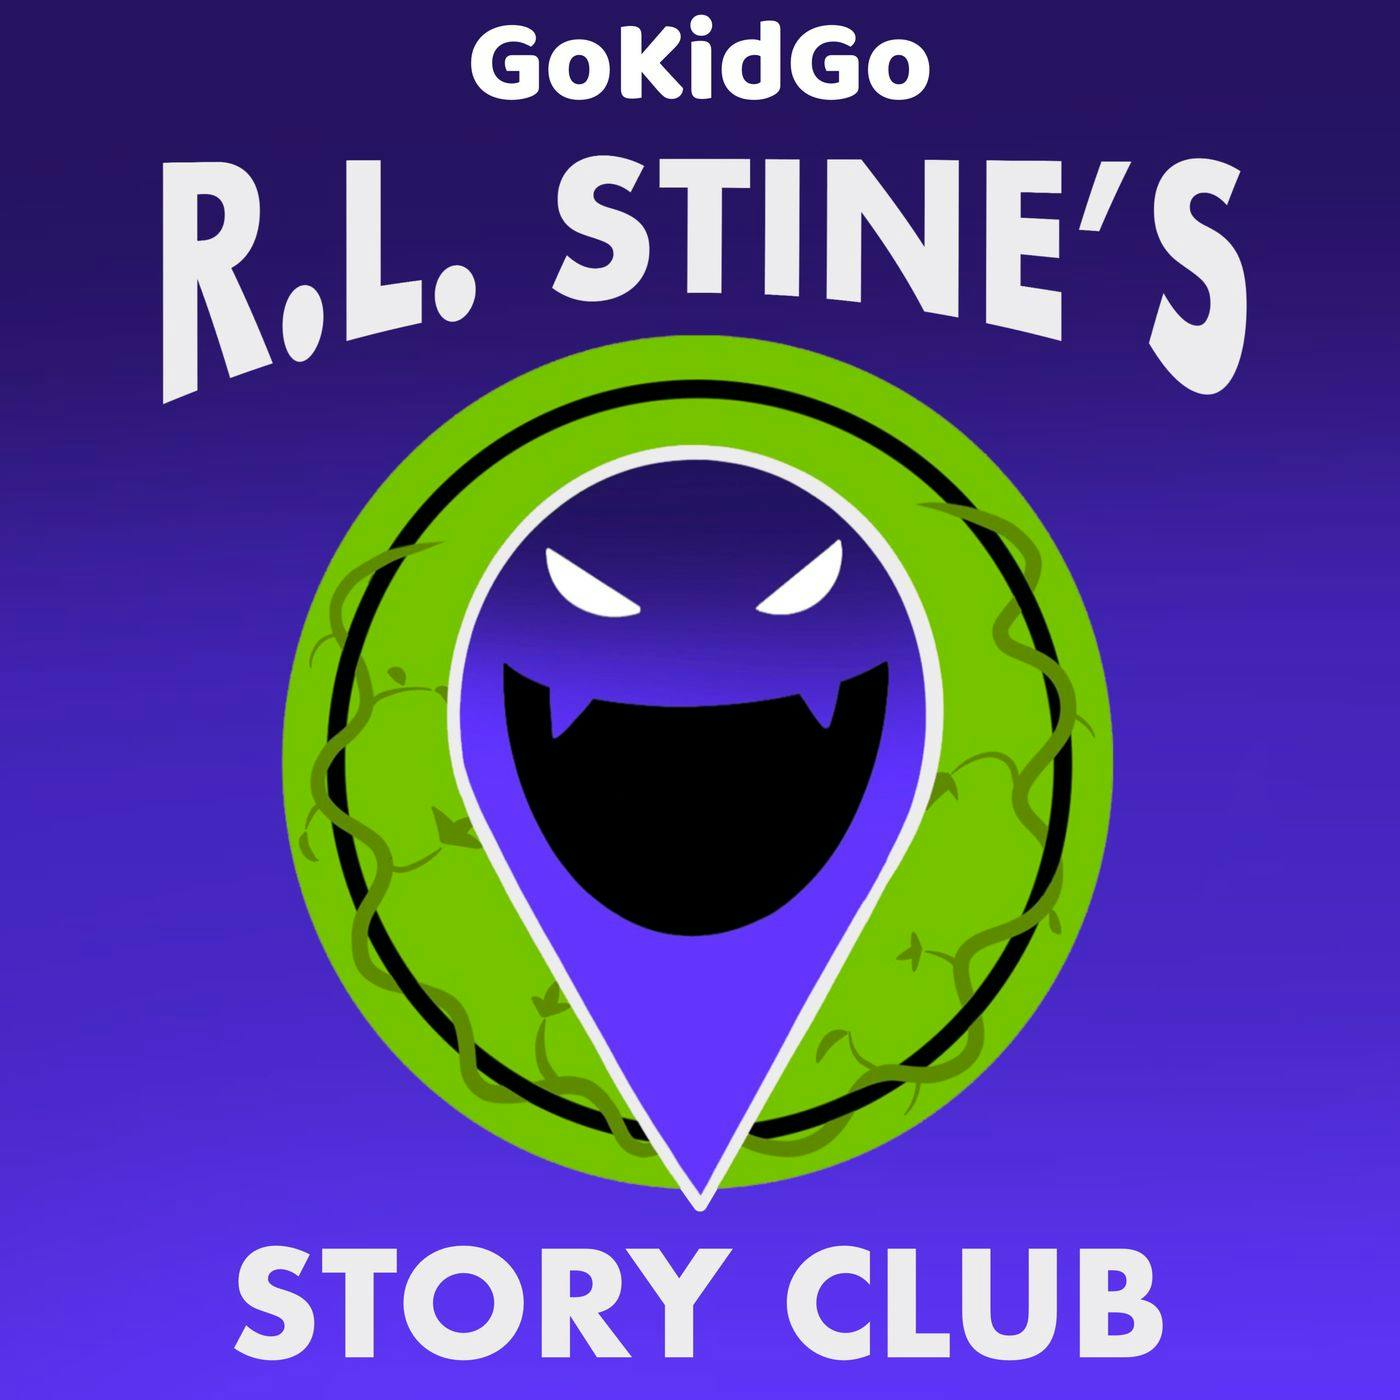 R.L. Stine’s Story Club Trailer